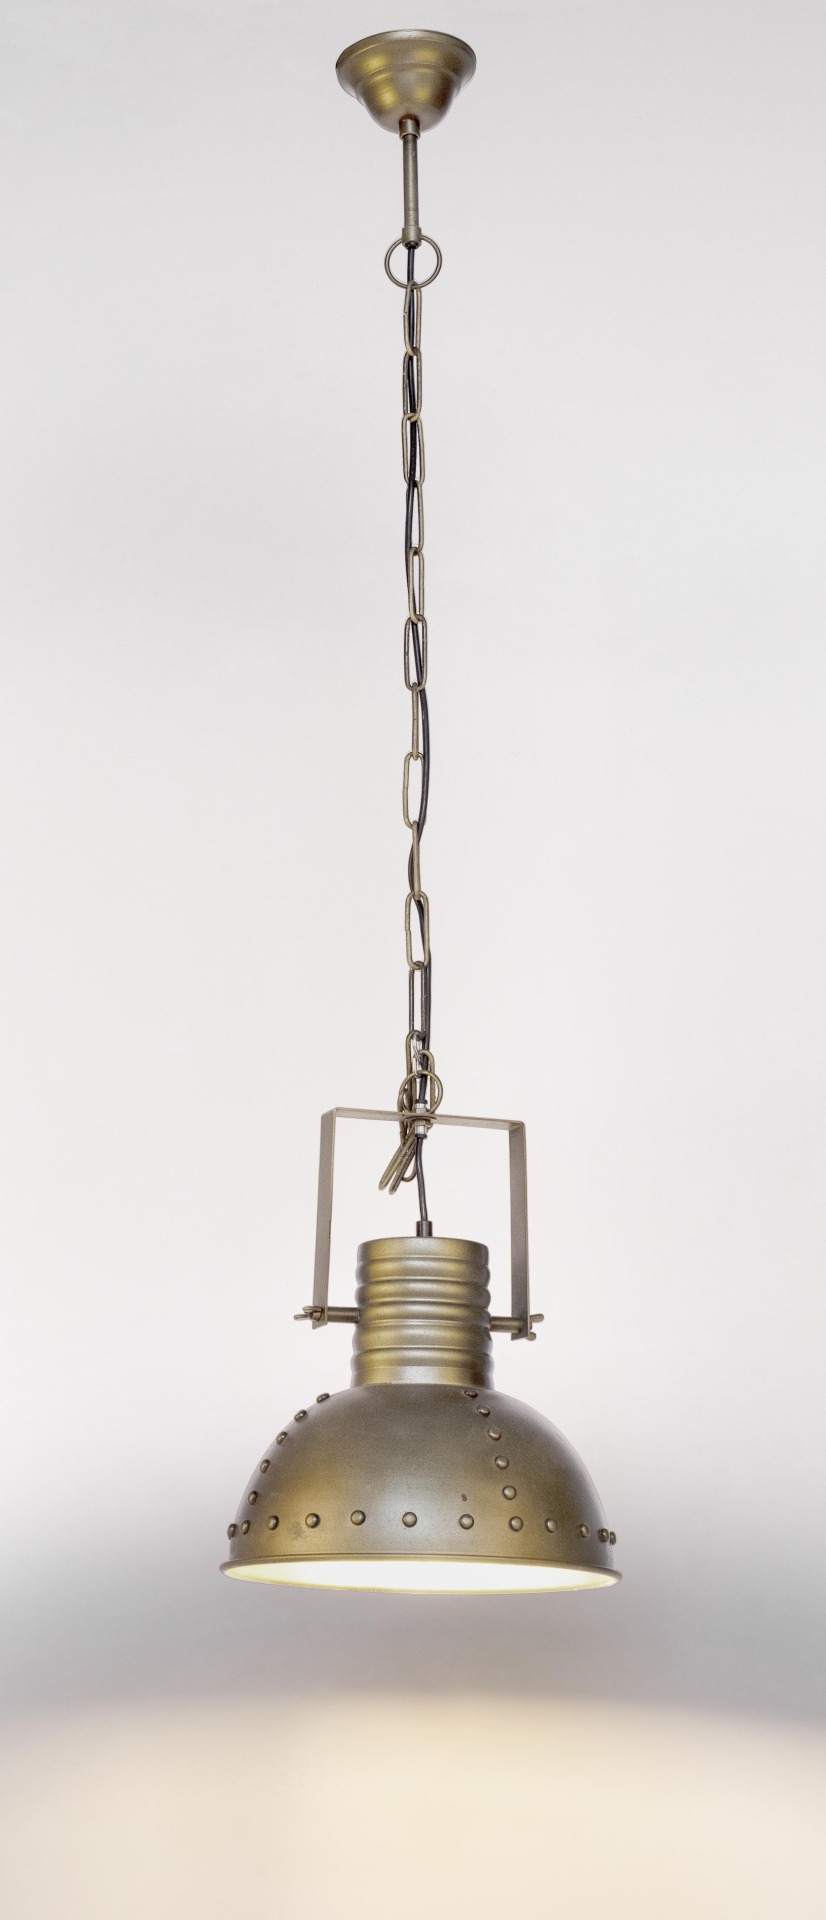 Die Hängeleuchte Arlington überzeugt mit ihrem industriellen Design. Gefertigt wurde sie aus Metall, welches einen goldenen Farbton besitzt. Die Lampenschirme sind auch aus Metall. Die Lampe besitzt eine Höhe von 168 cm.